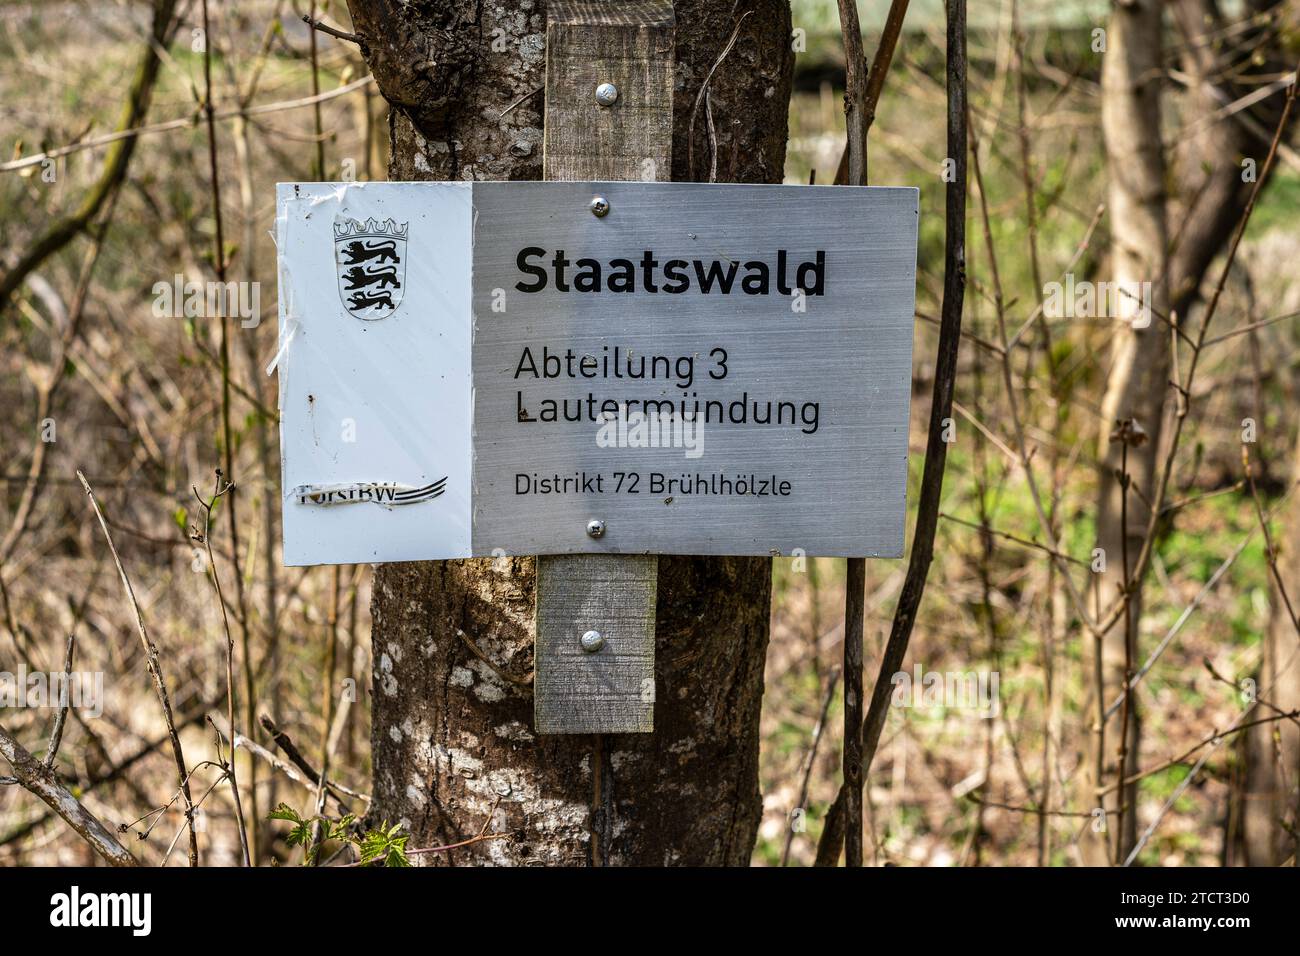 Immagine simbolica del concetto di foresta statale utilizzando l'esempio di segnaletica per tale foresta nei pressi di Lauterach, Swabian Alb, Germania. Foto Stock